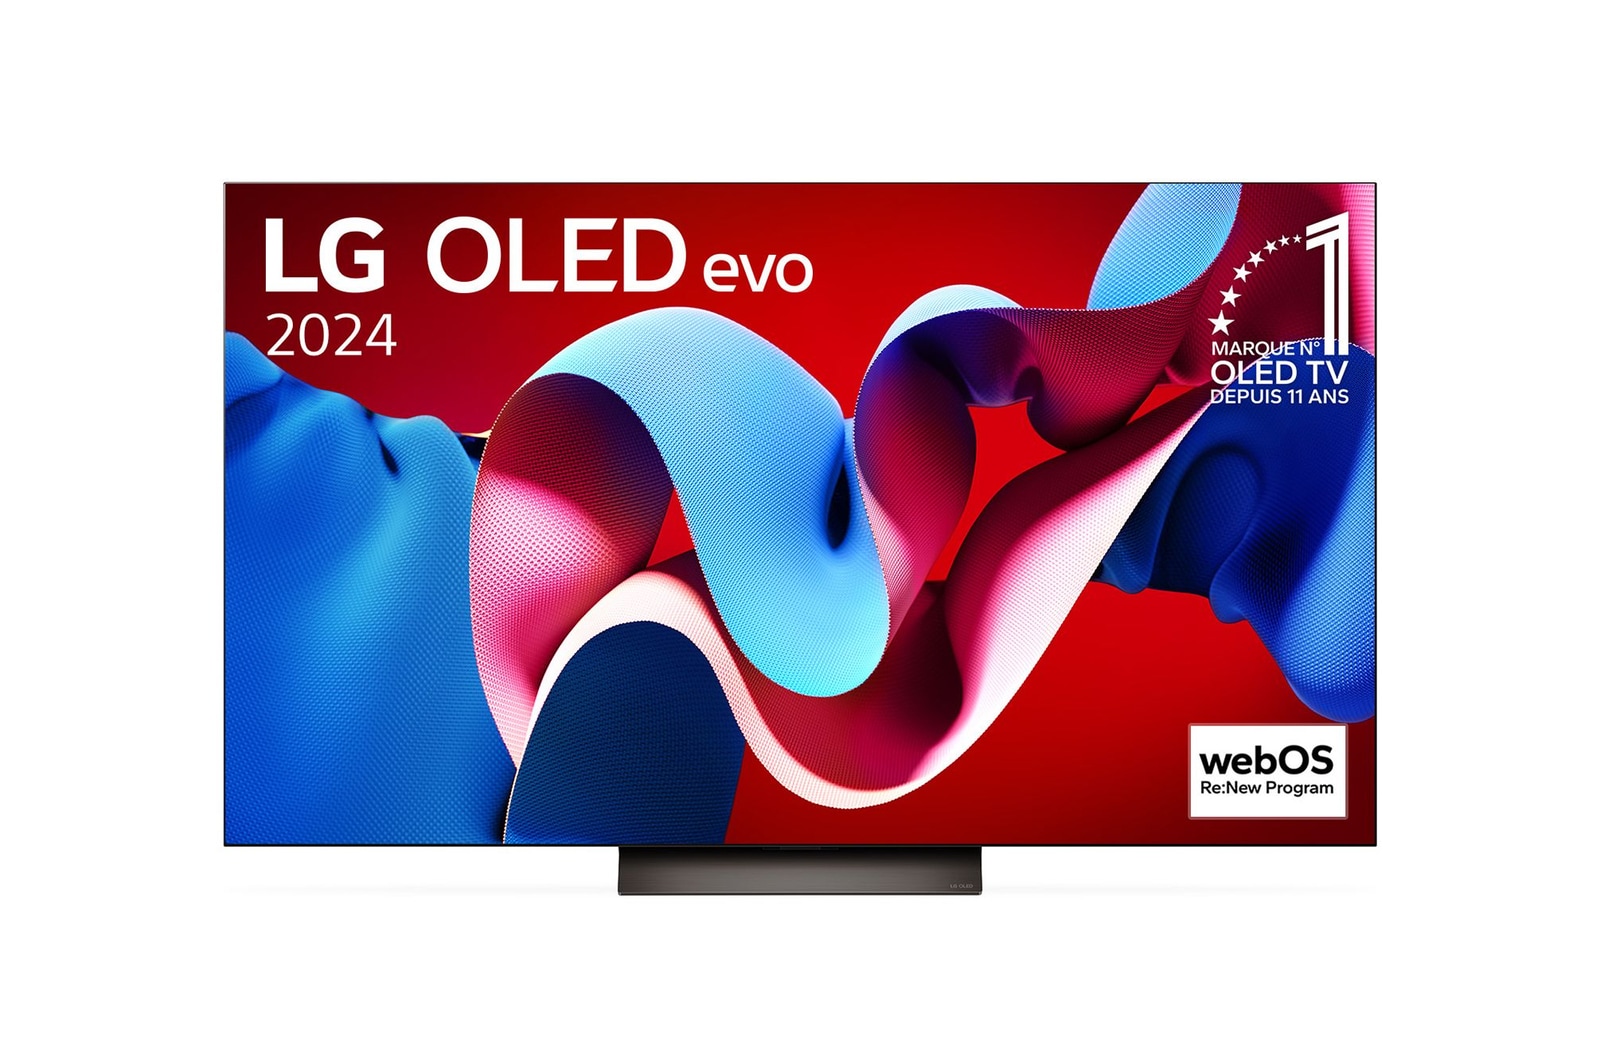 Vue de face de la TV OLED evo LG, OLED C4, logo de l’emblème OLED numéro 1 dans le monde pendant 11 ans et logo du programme webOS Re:New à l’écran.